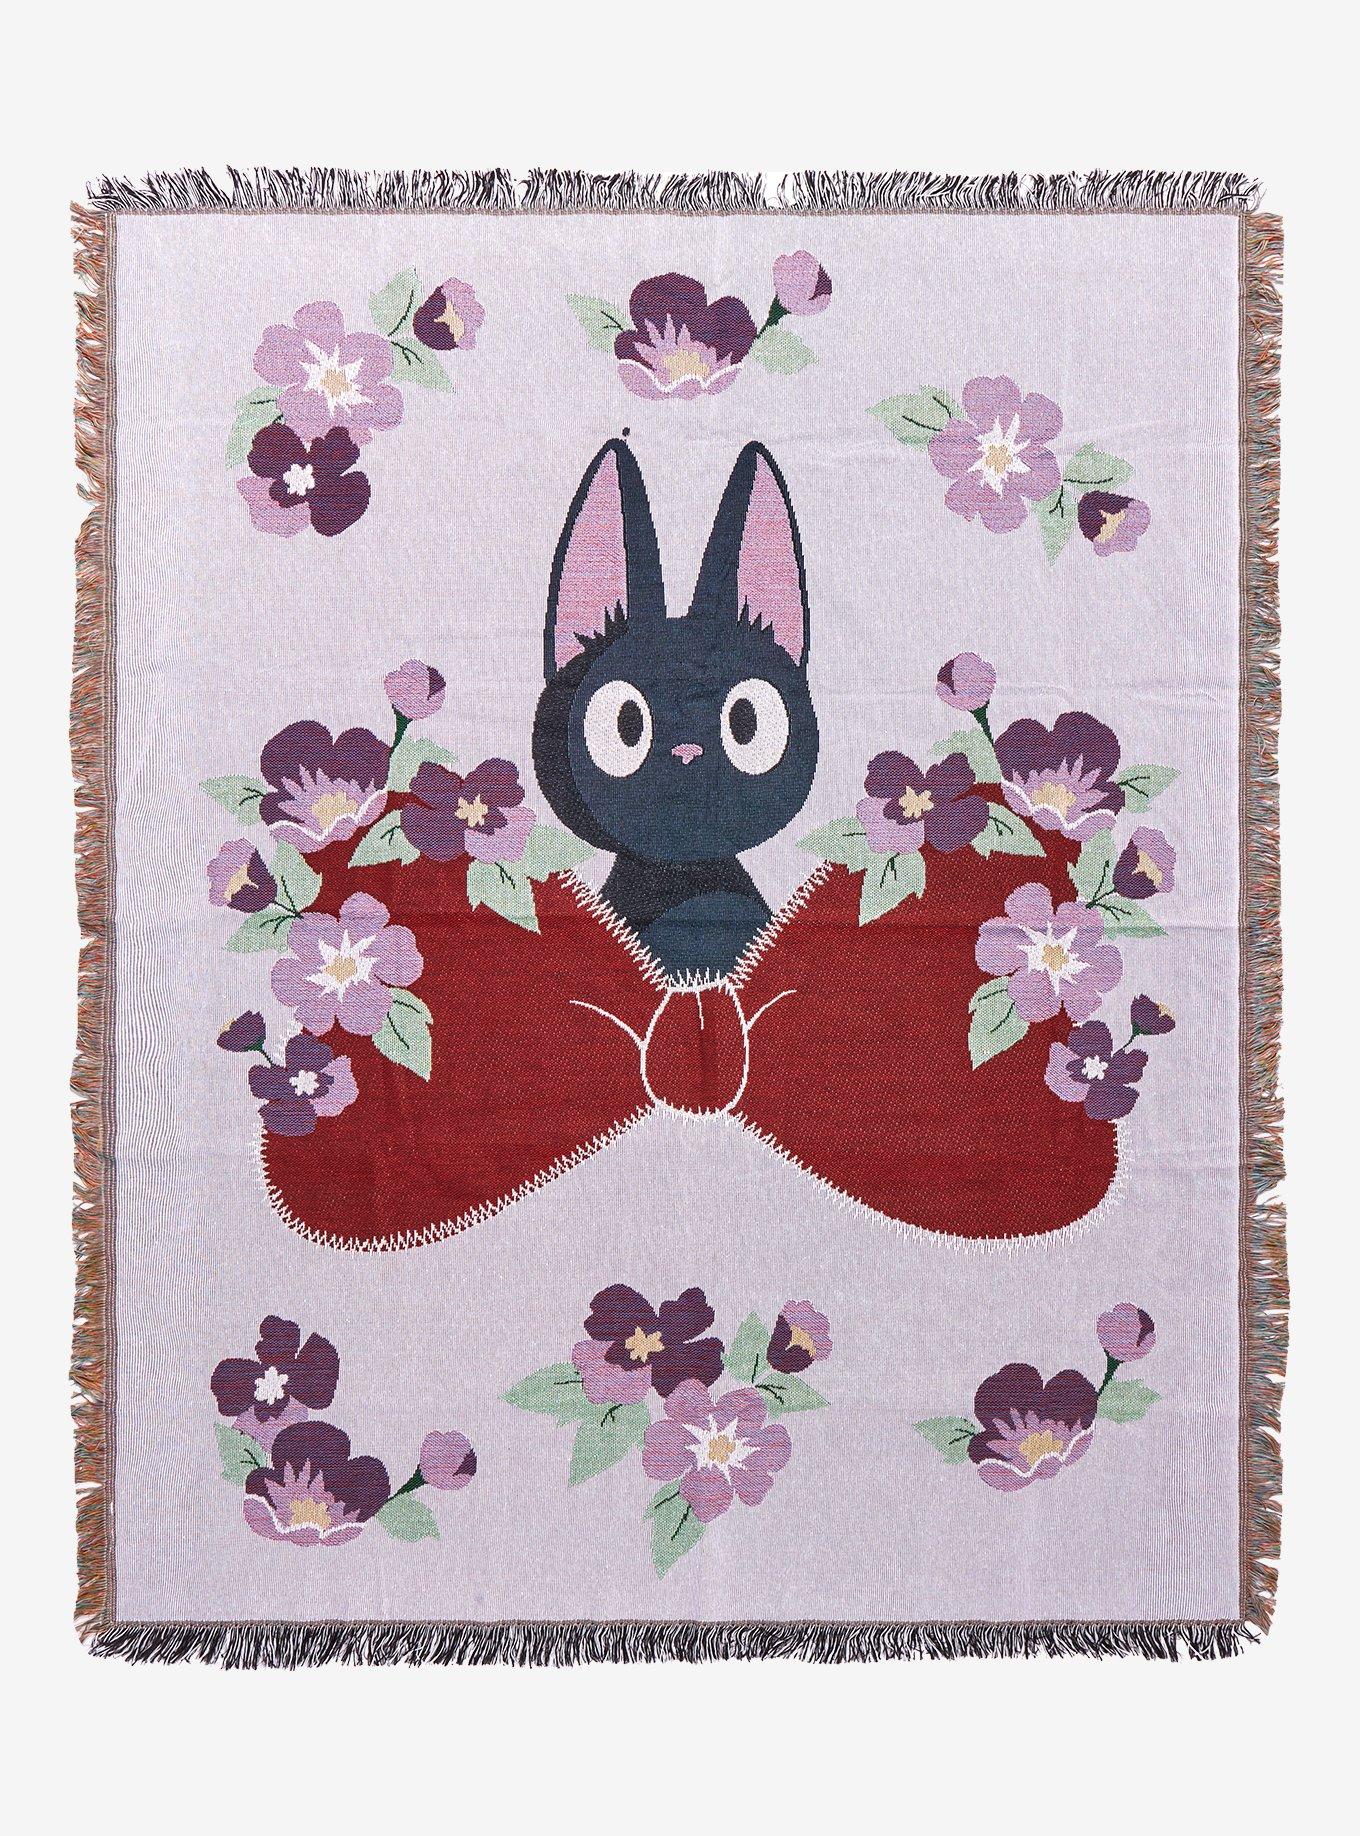 Floral Pop Kiki  The Running Stitch